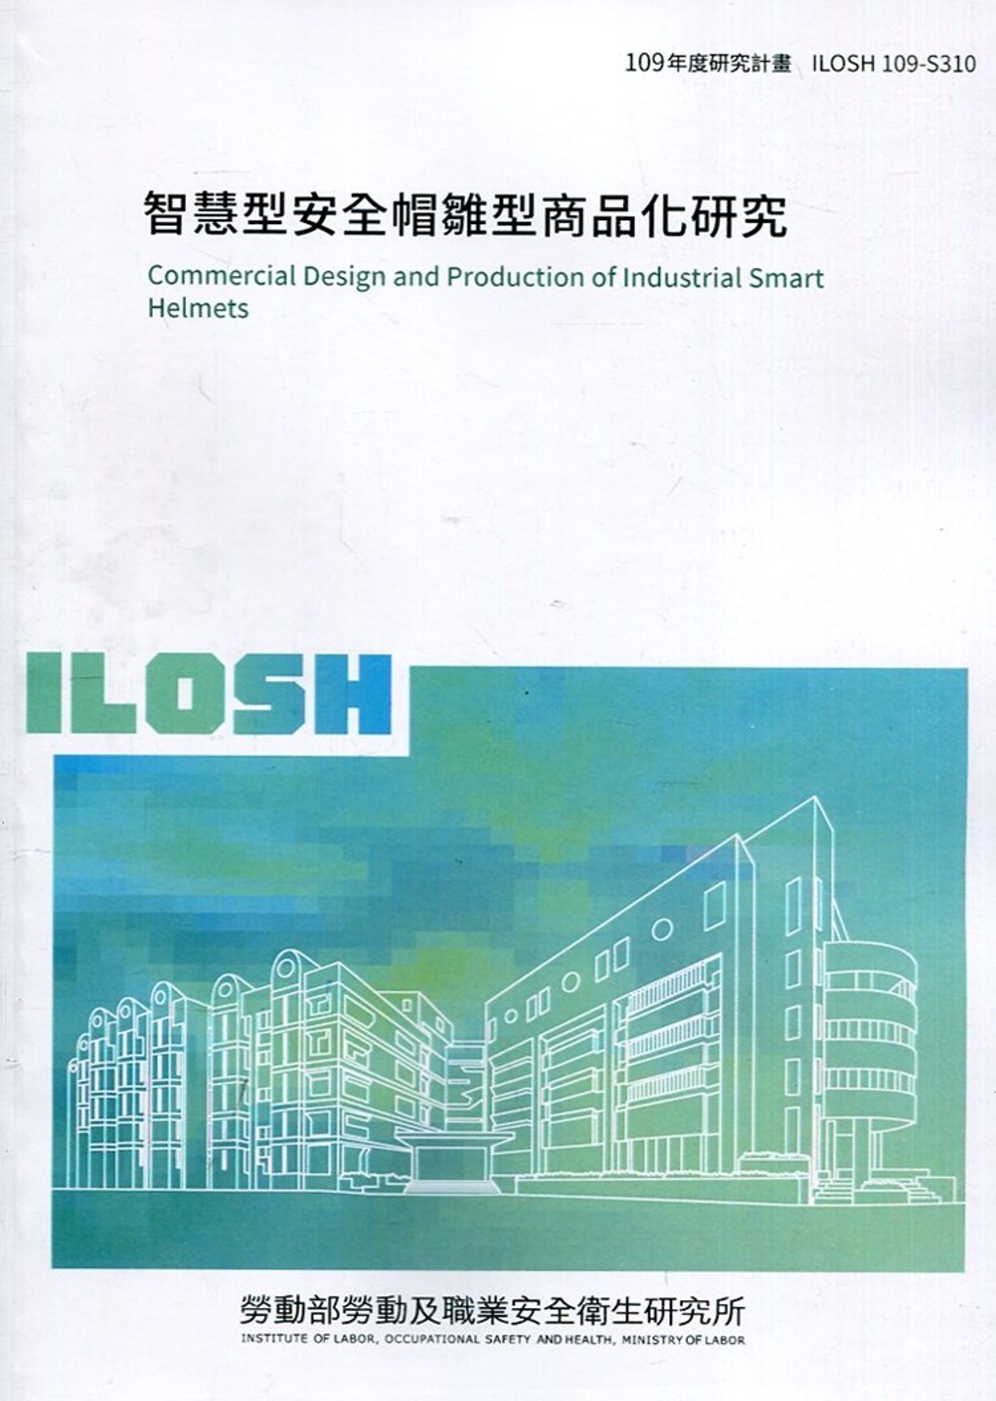 智慧型安全帽雛型商品化研究 ILOSH109-S310